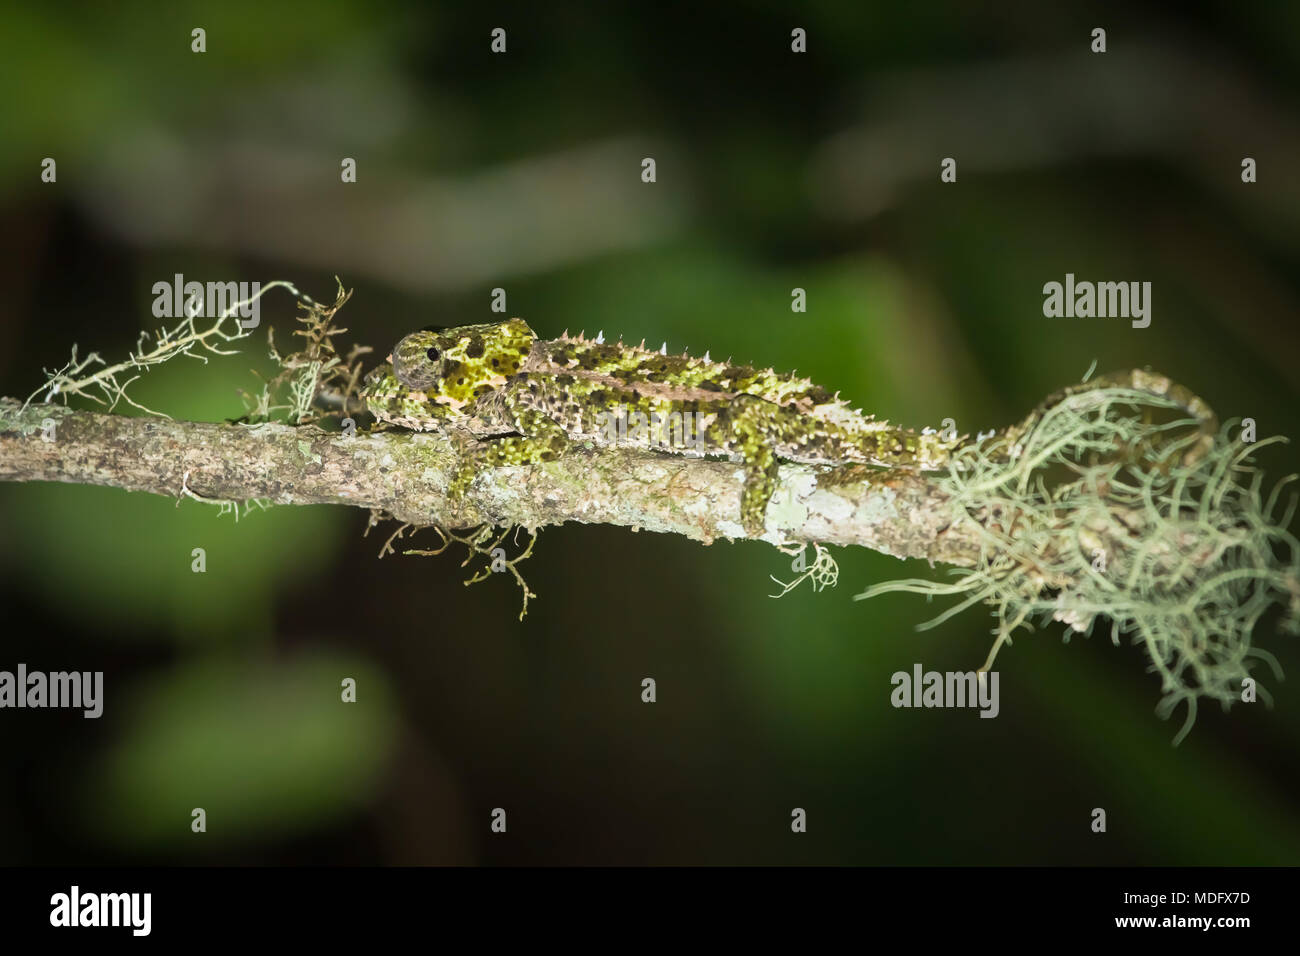 Kurze - Chameleon (Calumma brevicornis), Madagaskar Gehörnten. Stockfoto